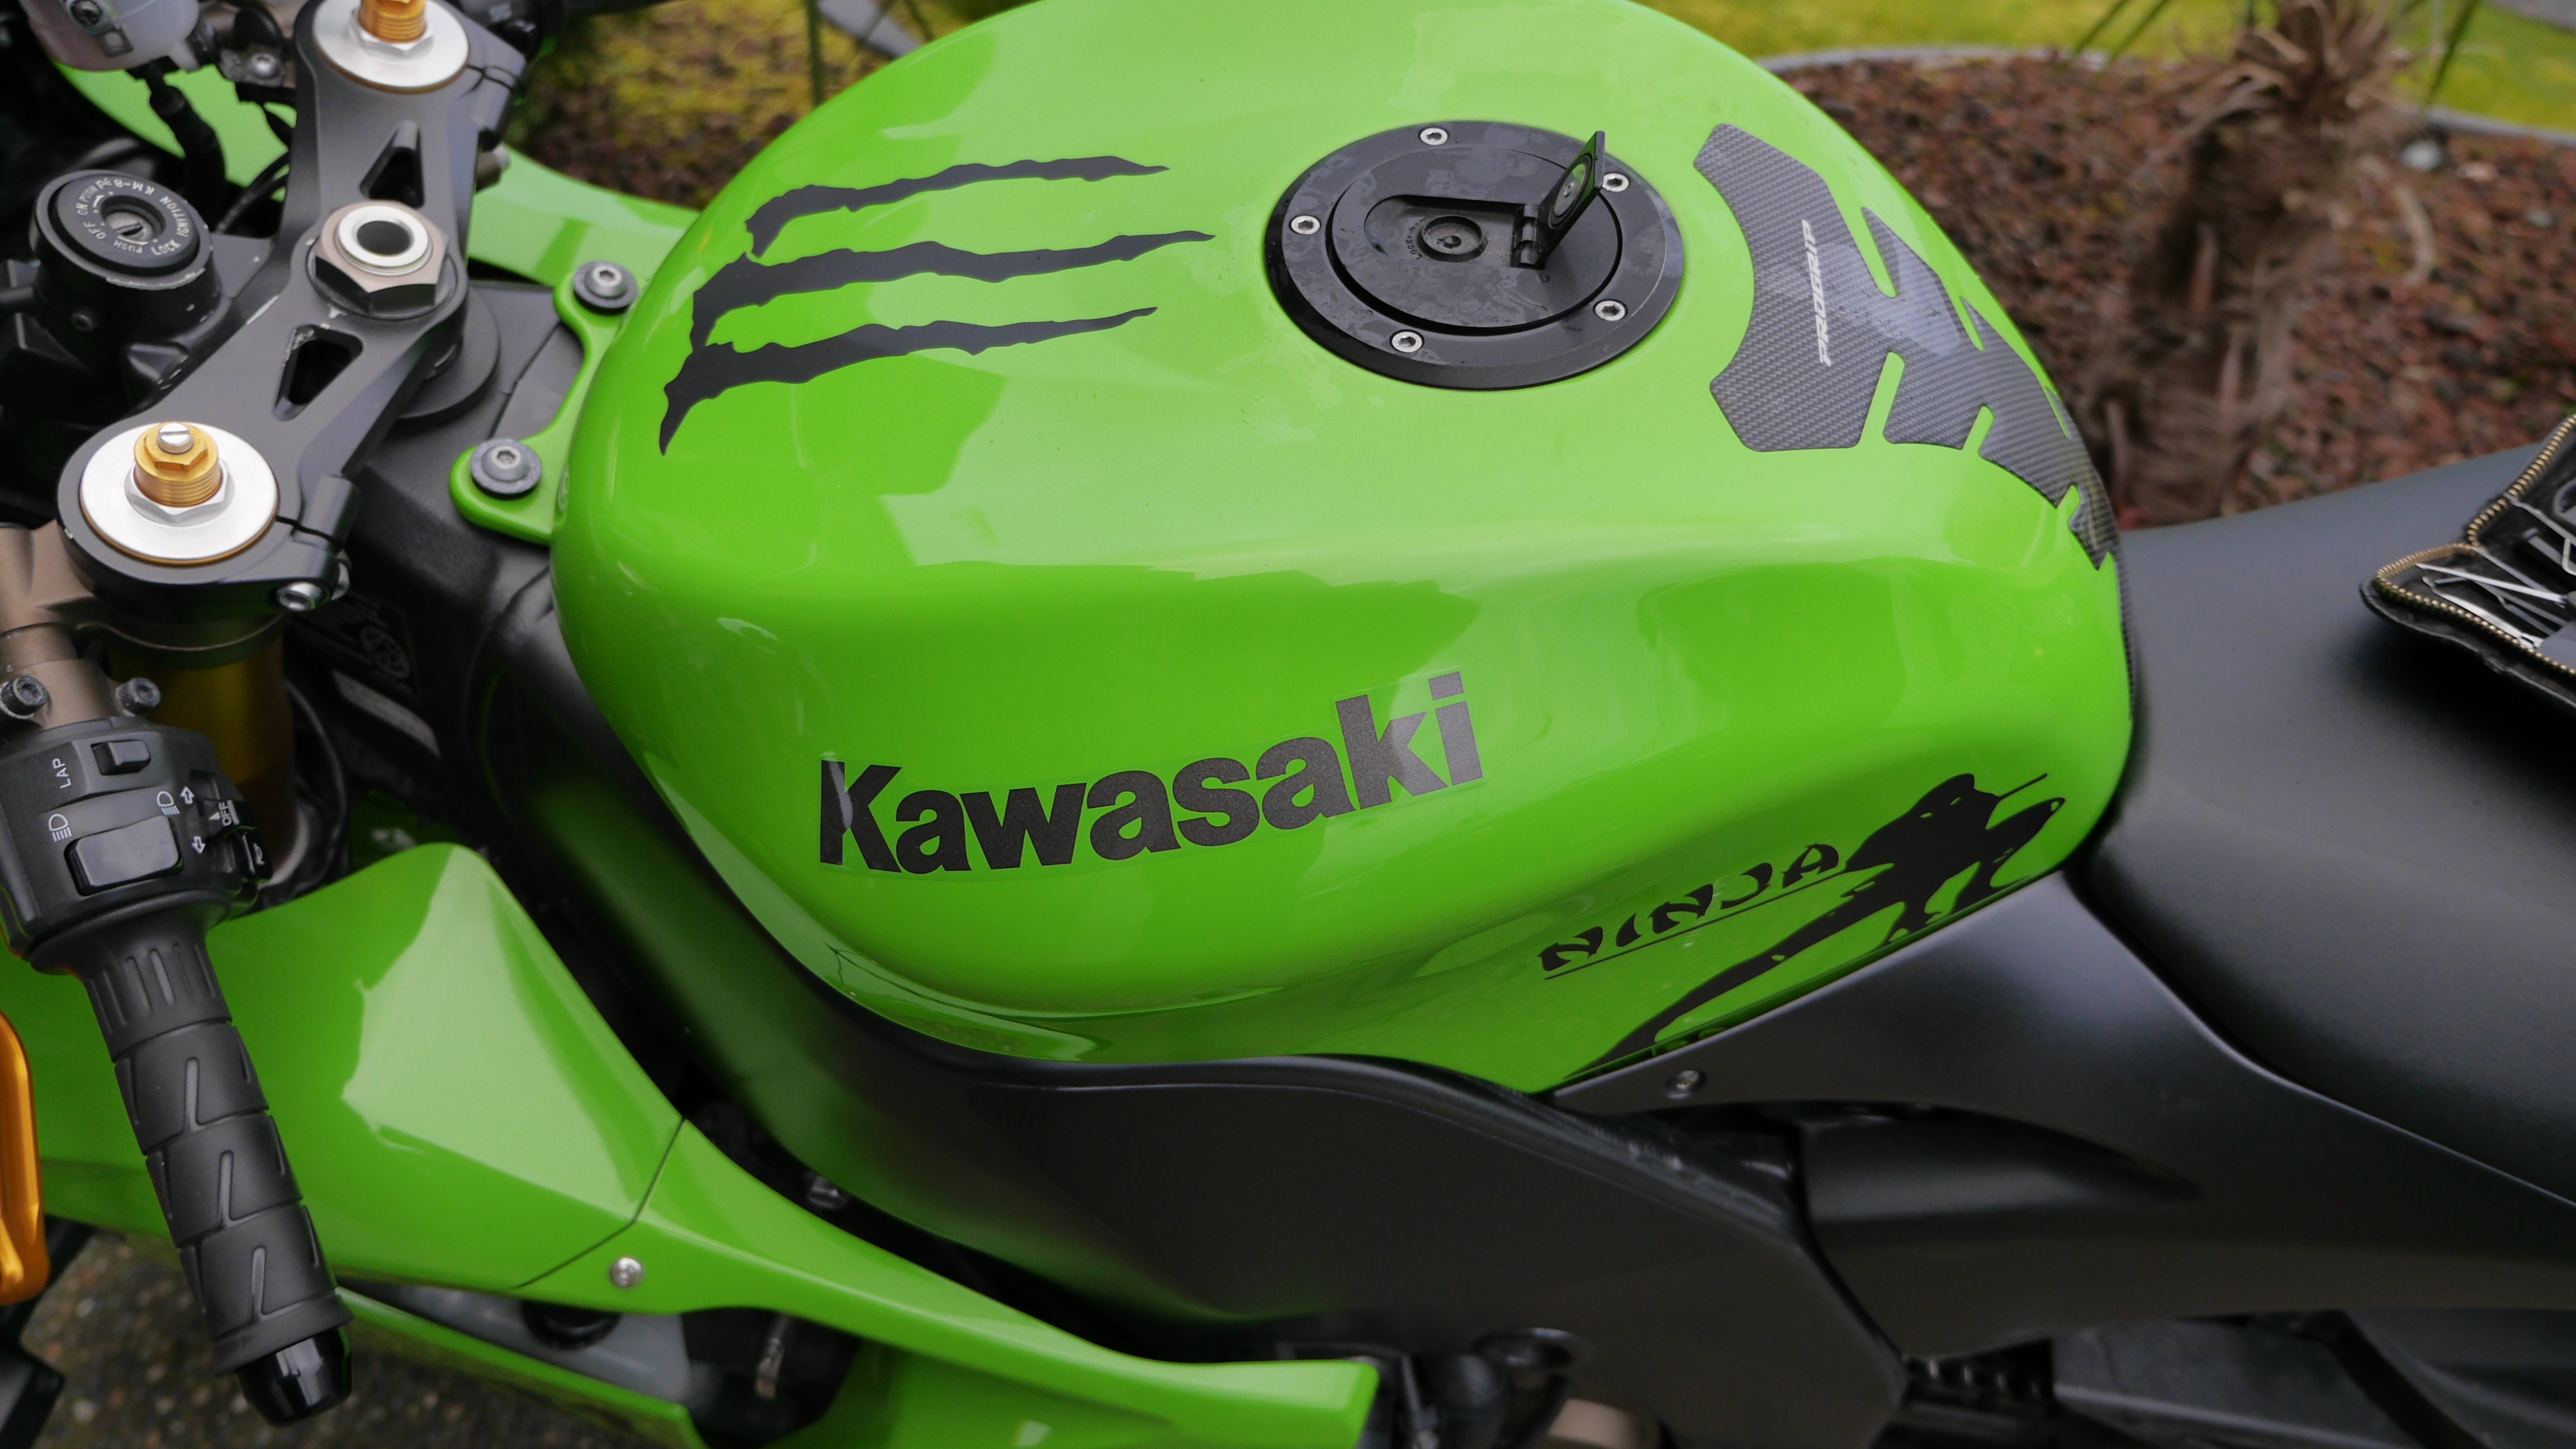 2004 Kawasaki Ninja locked gas cap